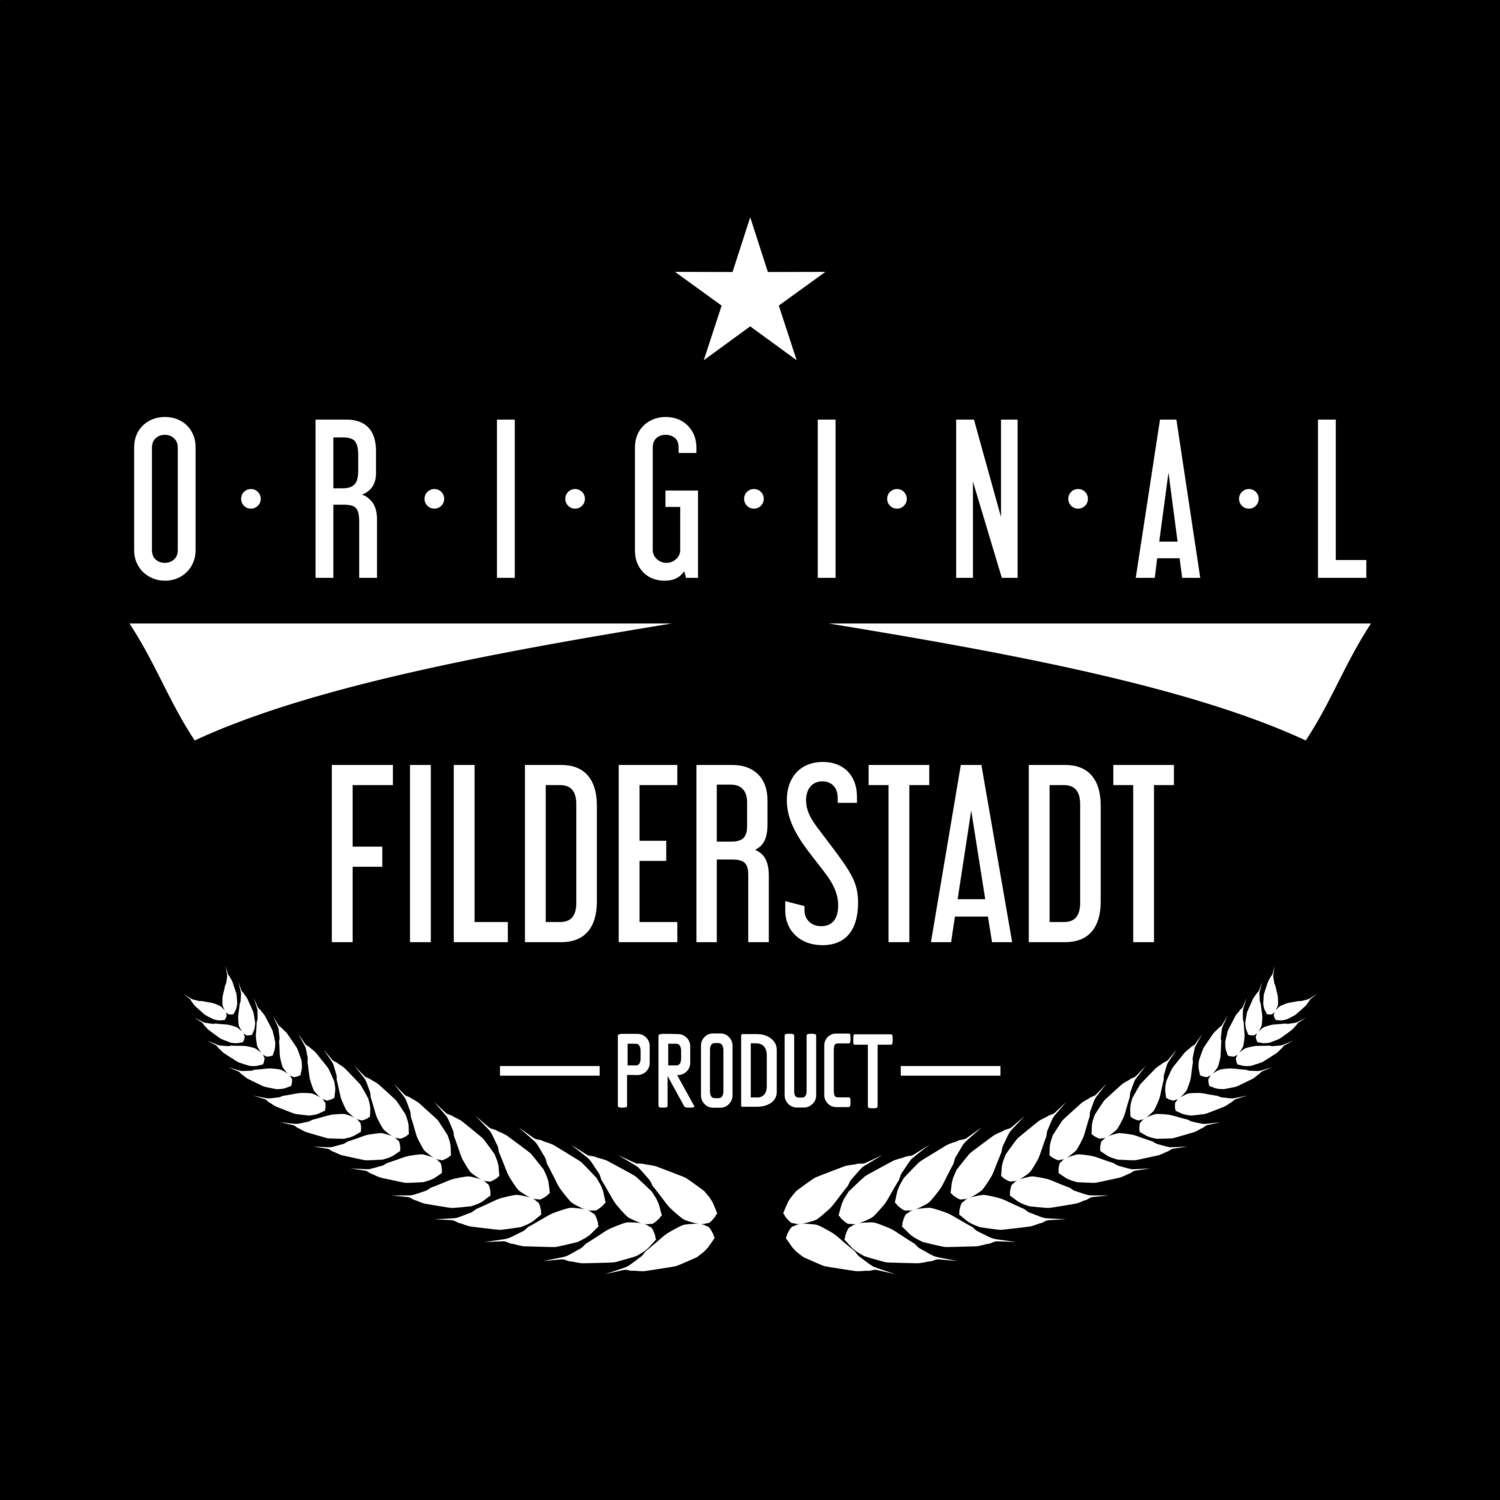 Filderstadt T-Shirt »Original Product«